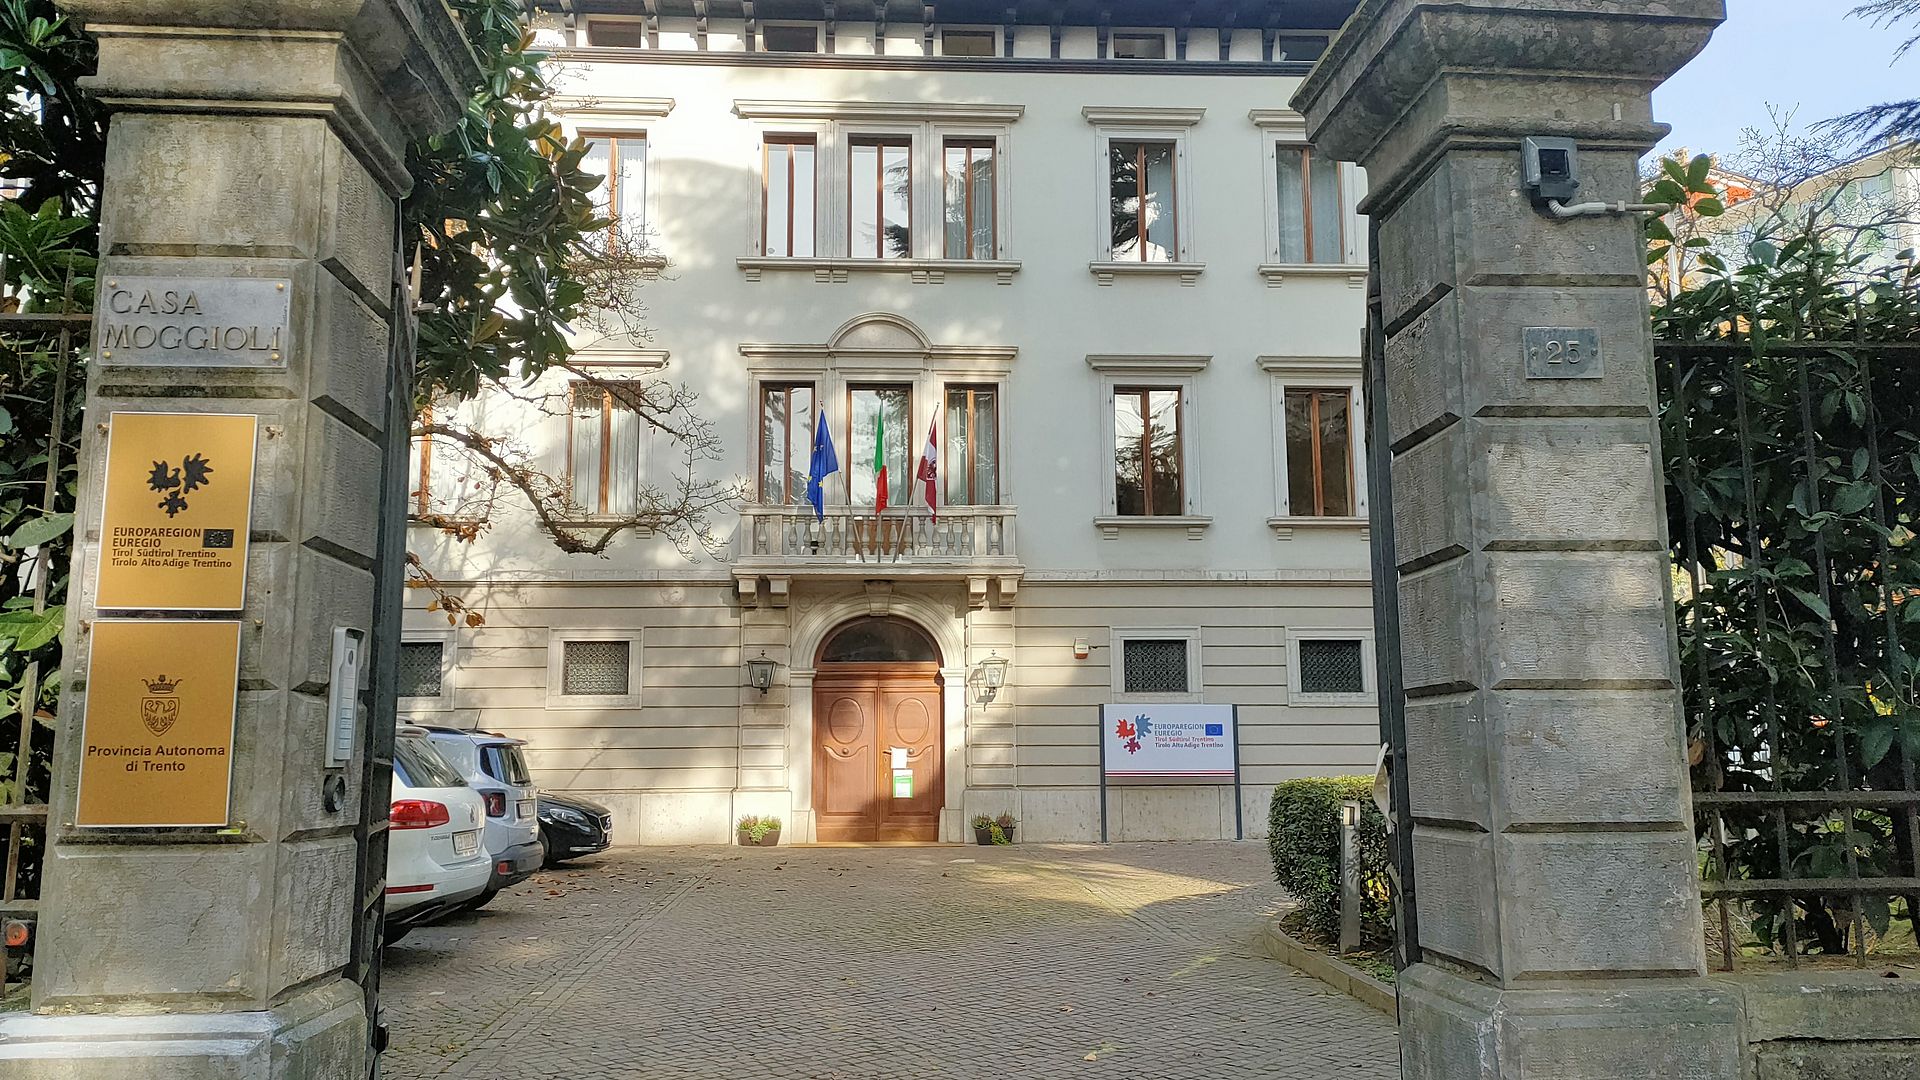 Informations- und Koordinierungsbüro Casa Moggioli in Trient 